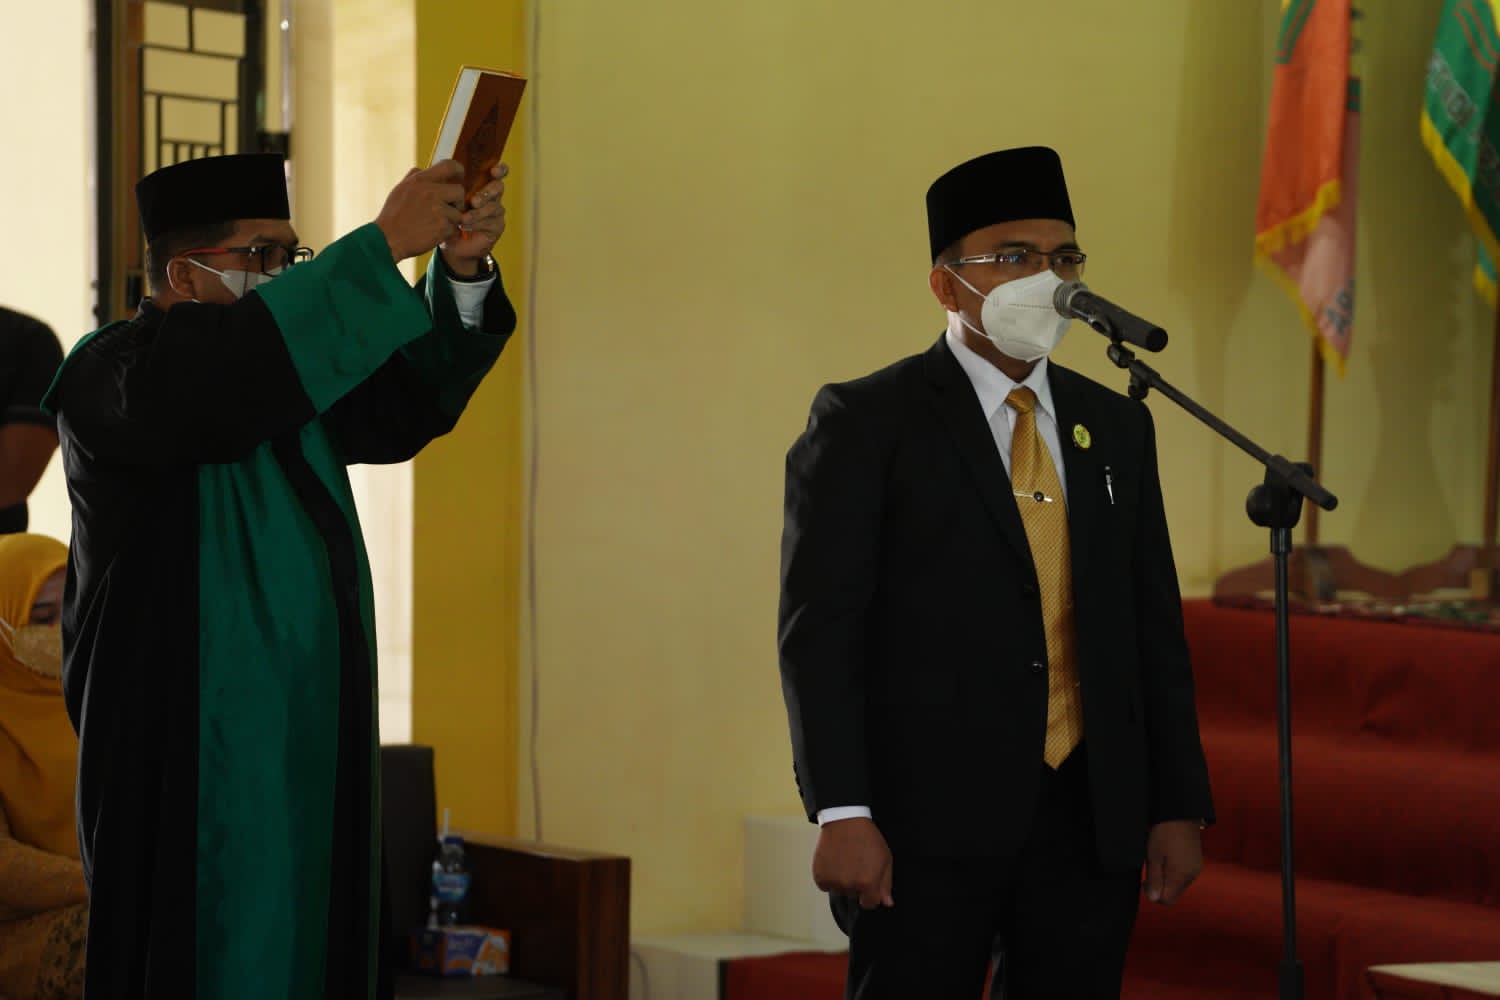 Nopriadi Resmi Jabat Sebagai Rektor Universitas Islam Kuantan Singingi Periode 2021-2025